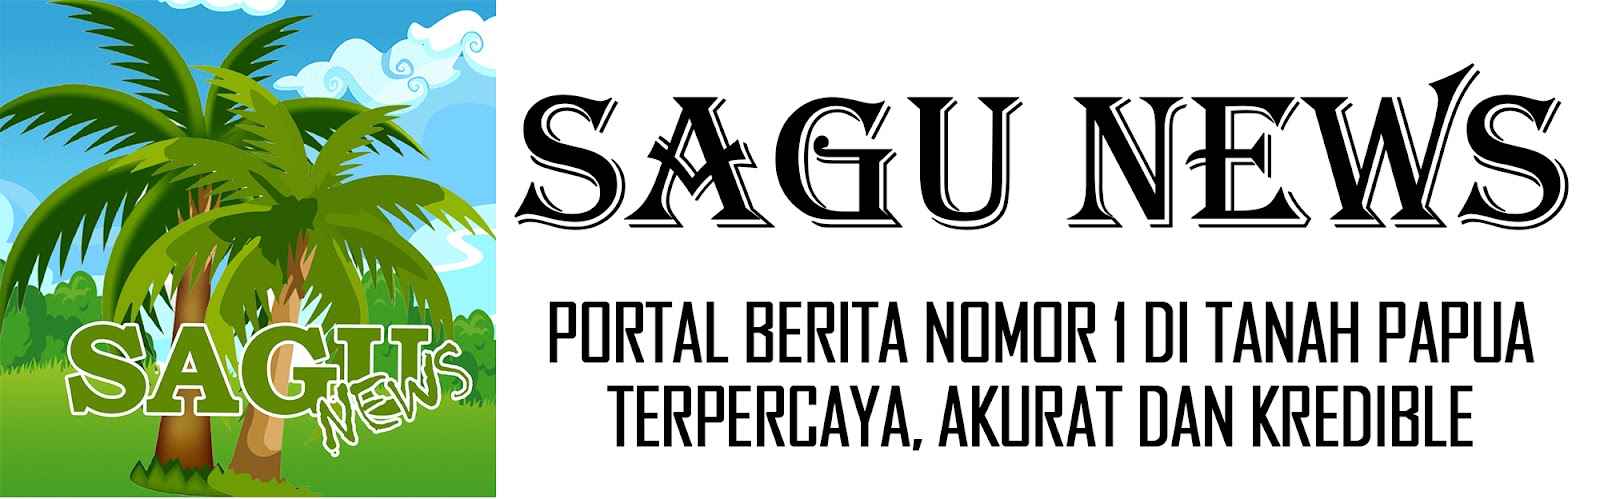 Sagu News